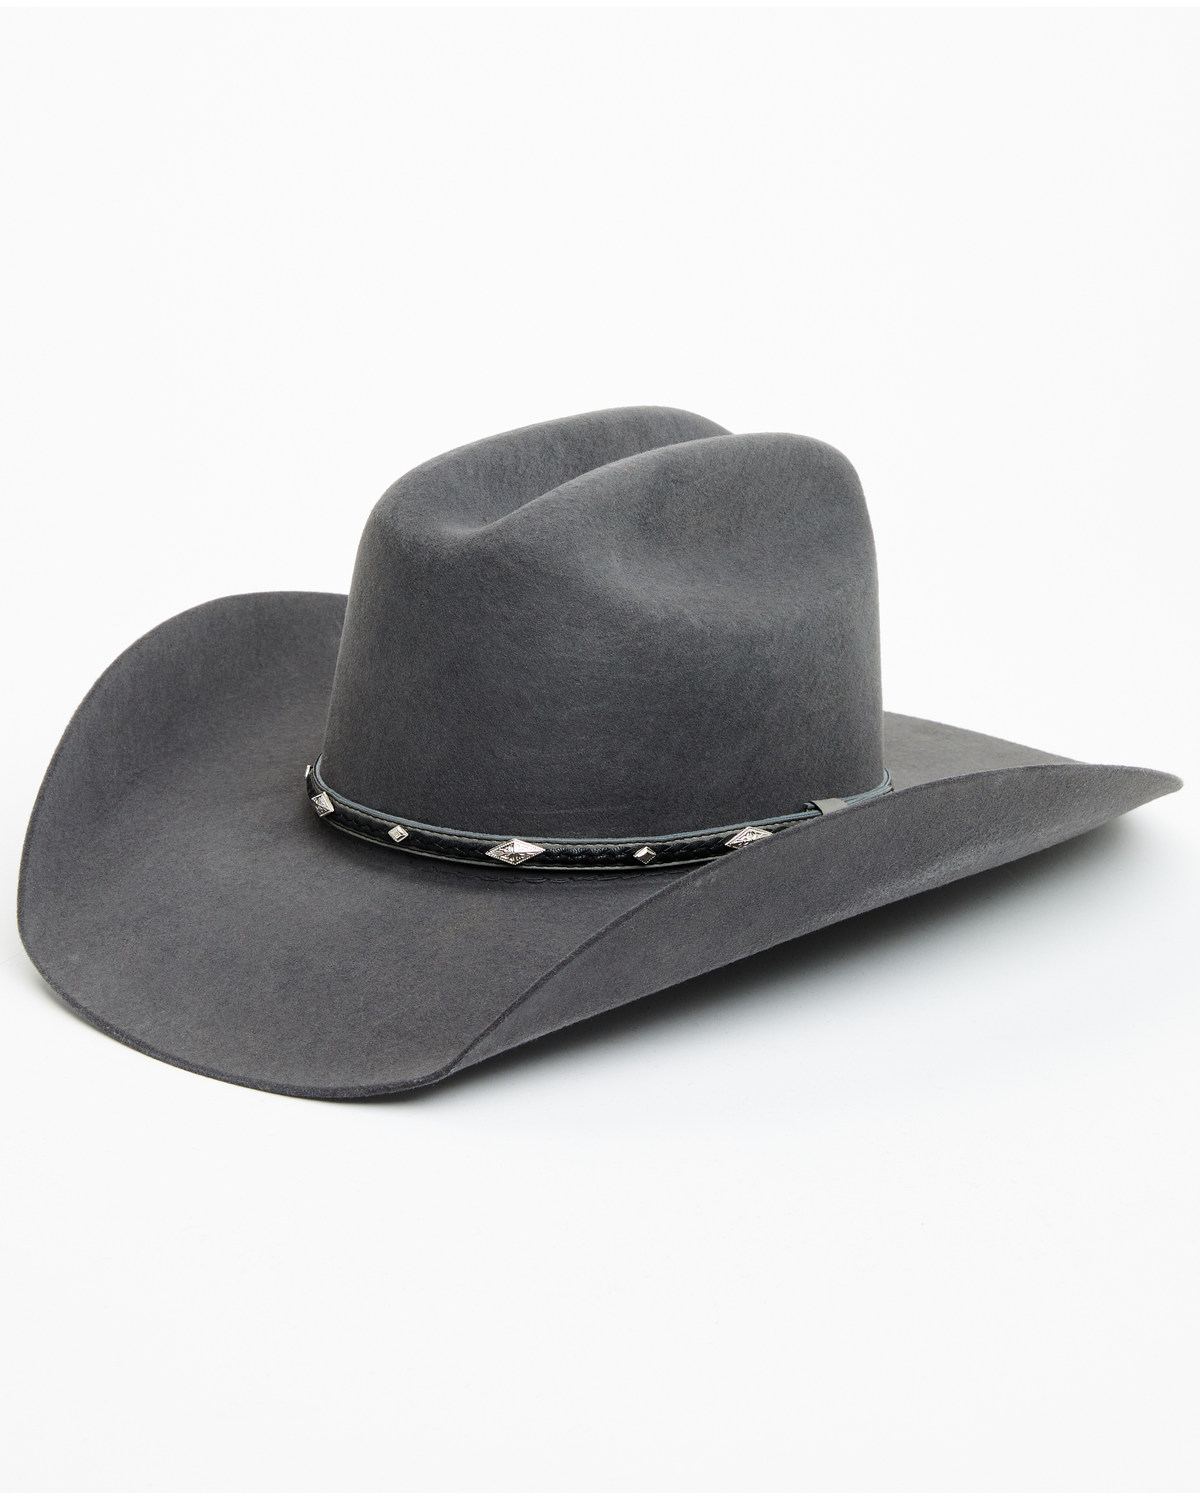 Cody James 3X Felt Cowboy Hat